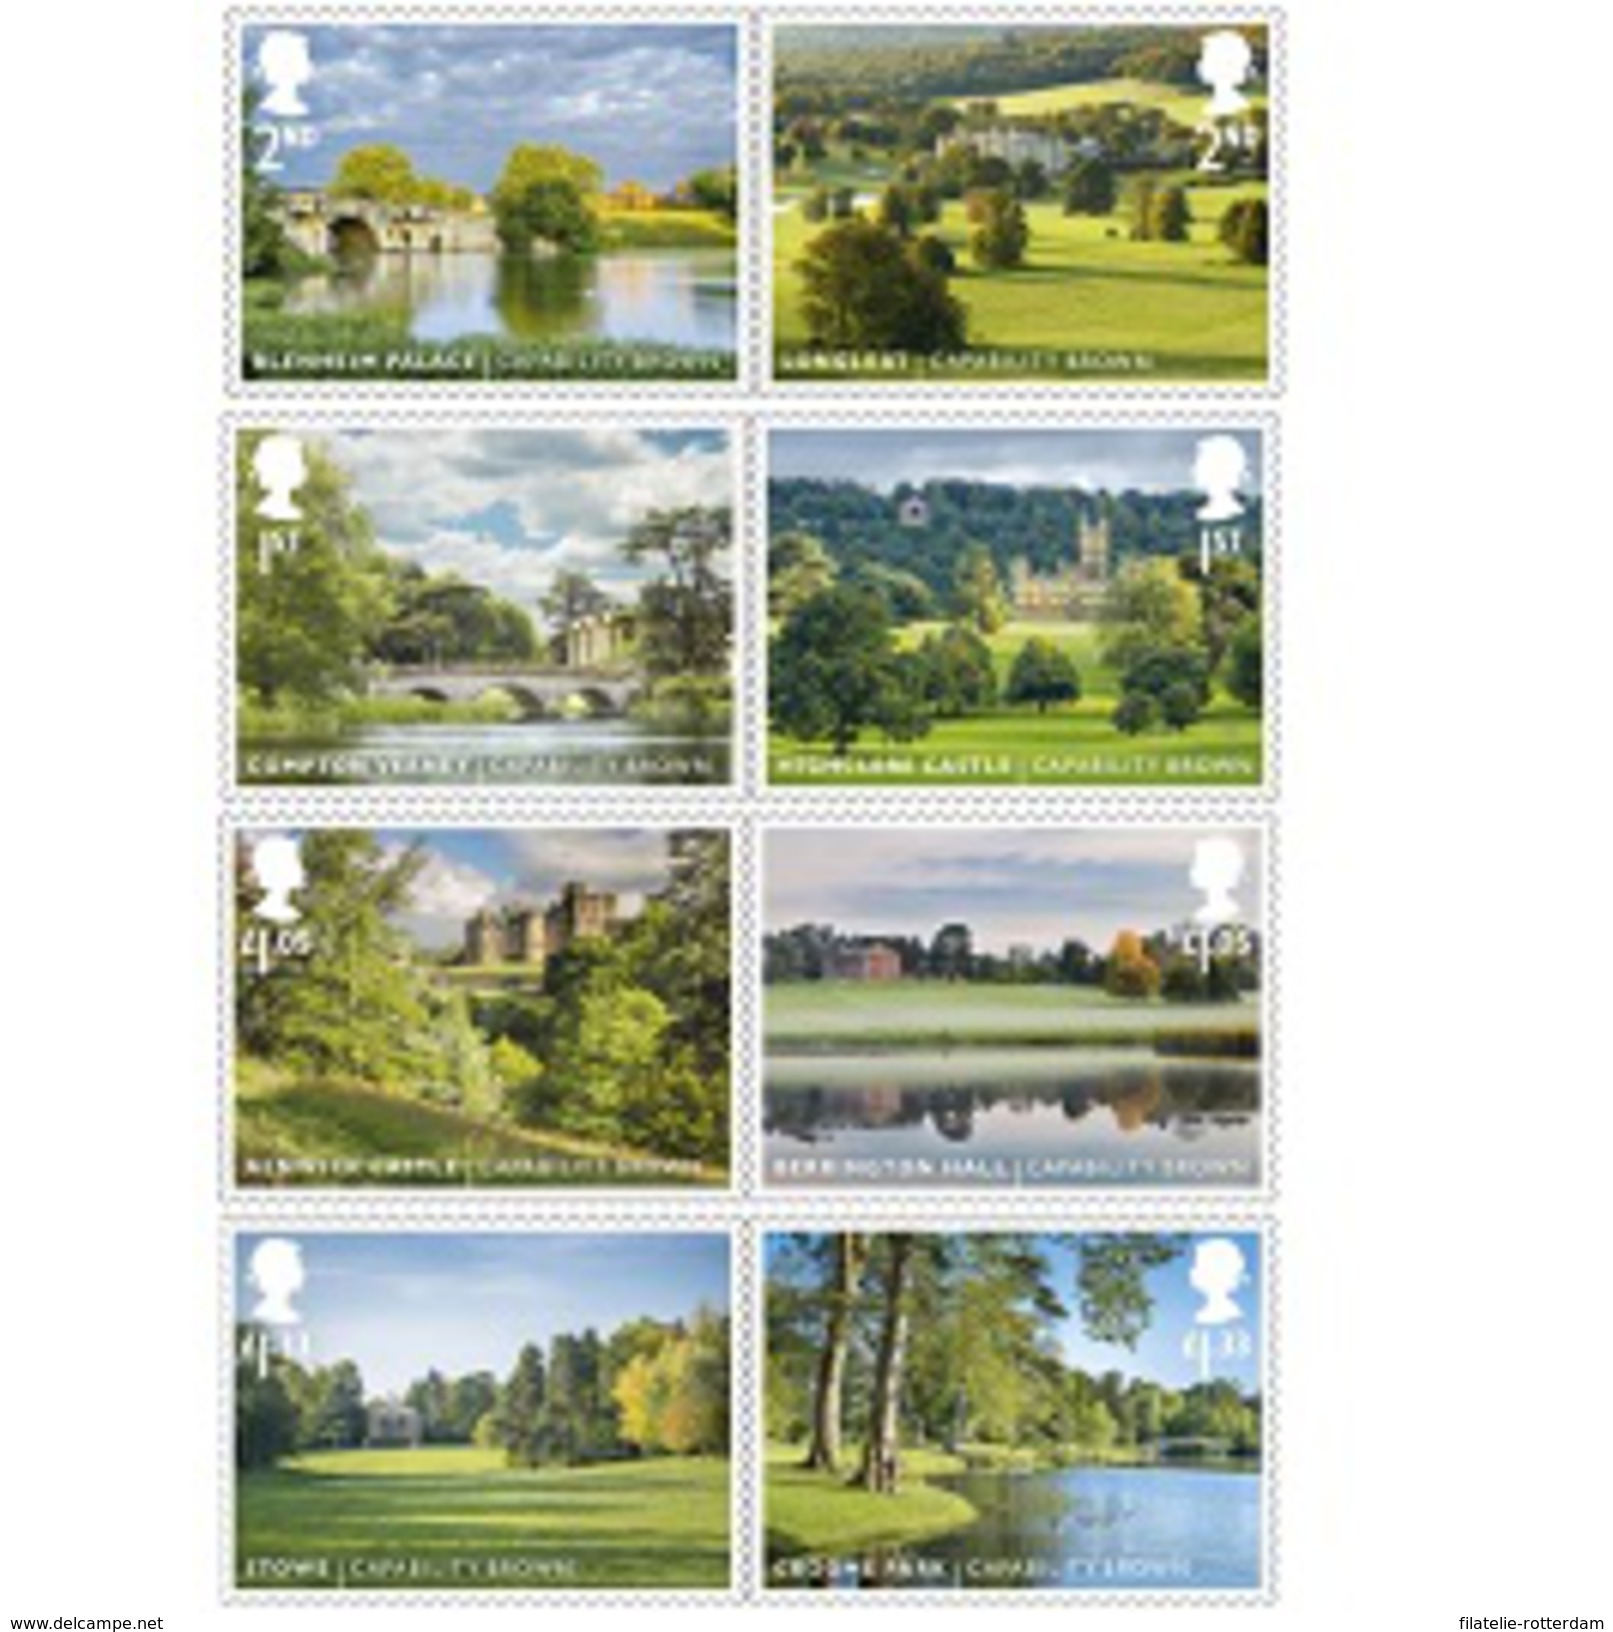 Groot-Brittannië / Great Britain - Postfris / MNH - Complete Set Landschapstuinen 2016 NEW!! - Neufs